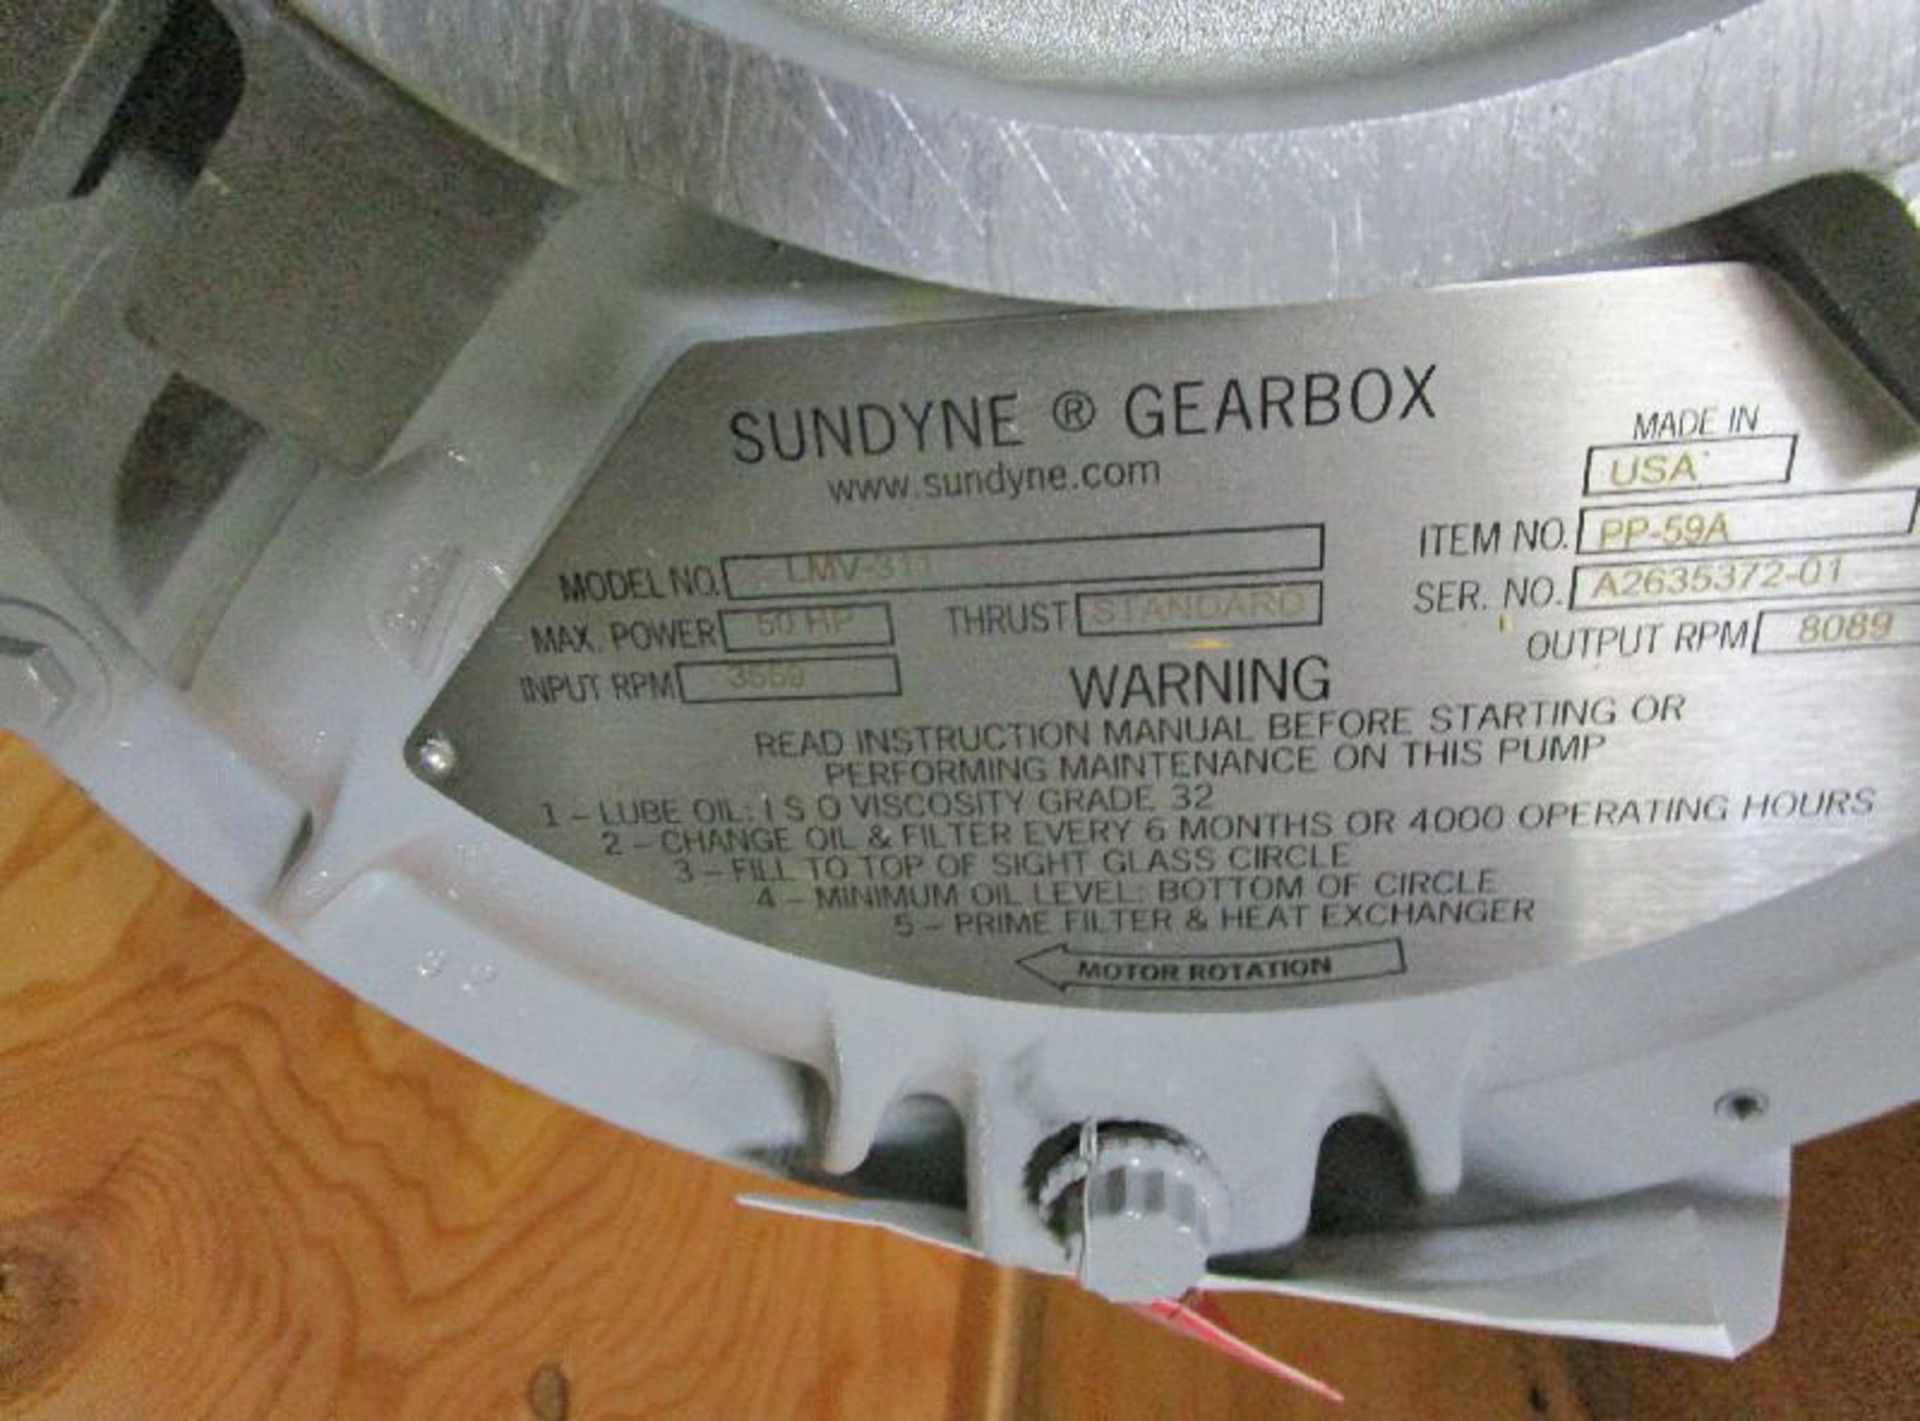 Sundyne Model LMV-311 Standard Thrust Gear Box - Image 2 of 3